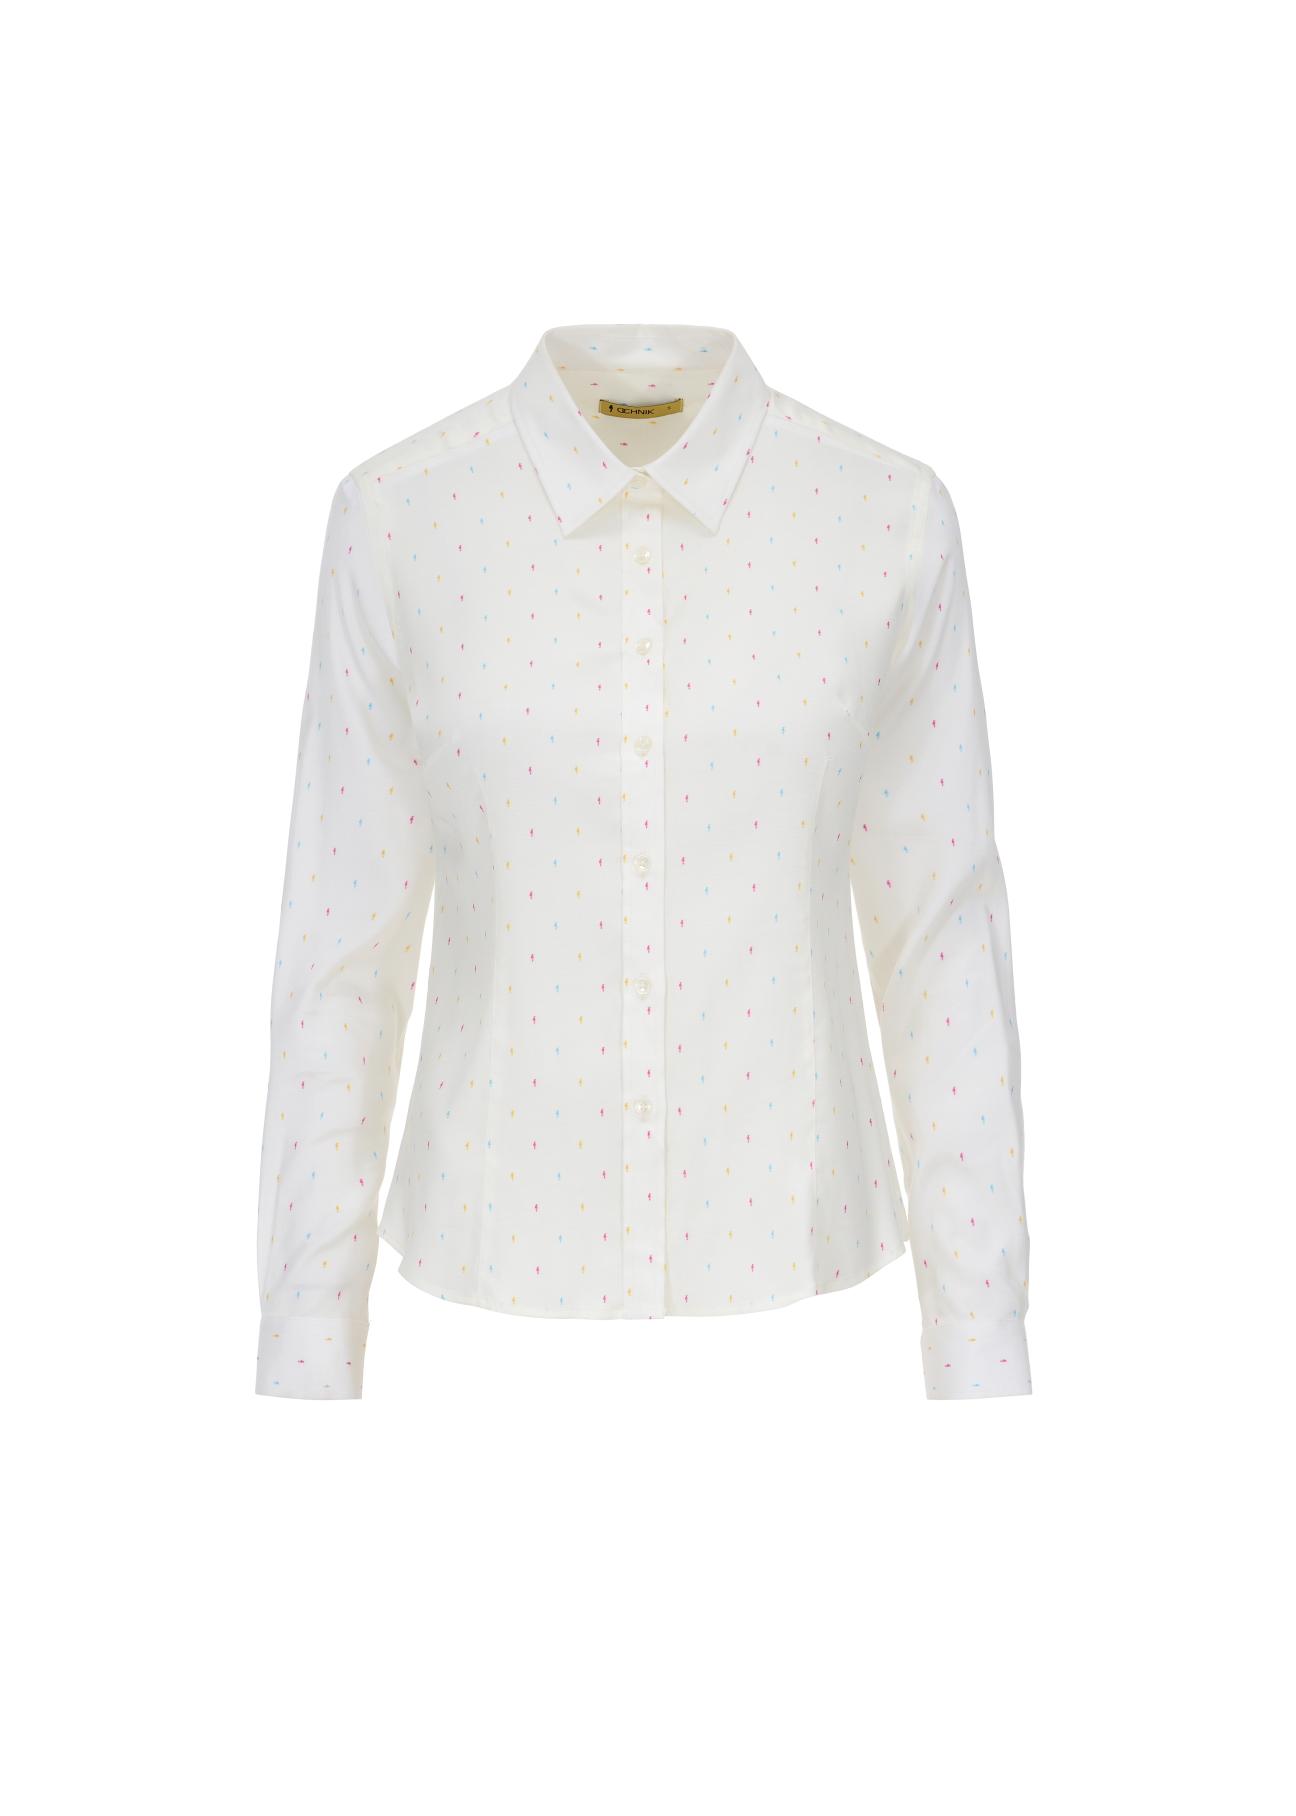 Biała koszula damska w drobną wilgę KOSDT-0089-11(W22)